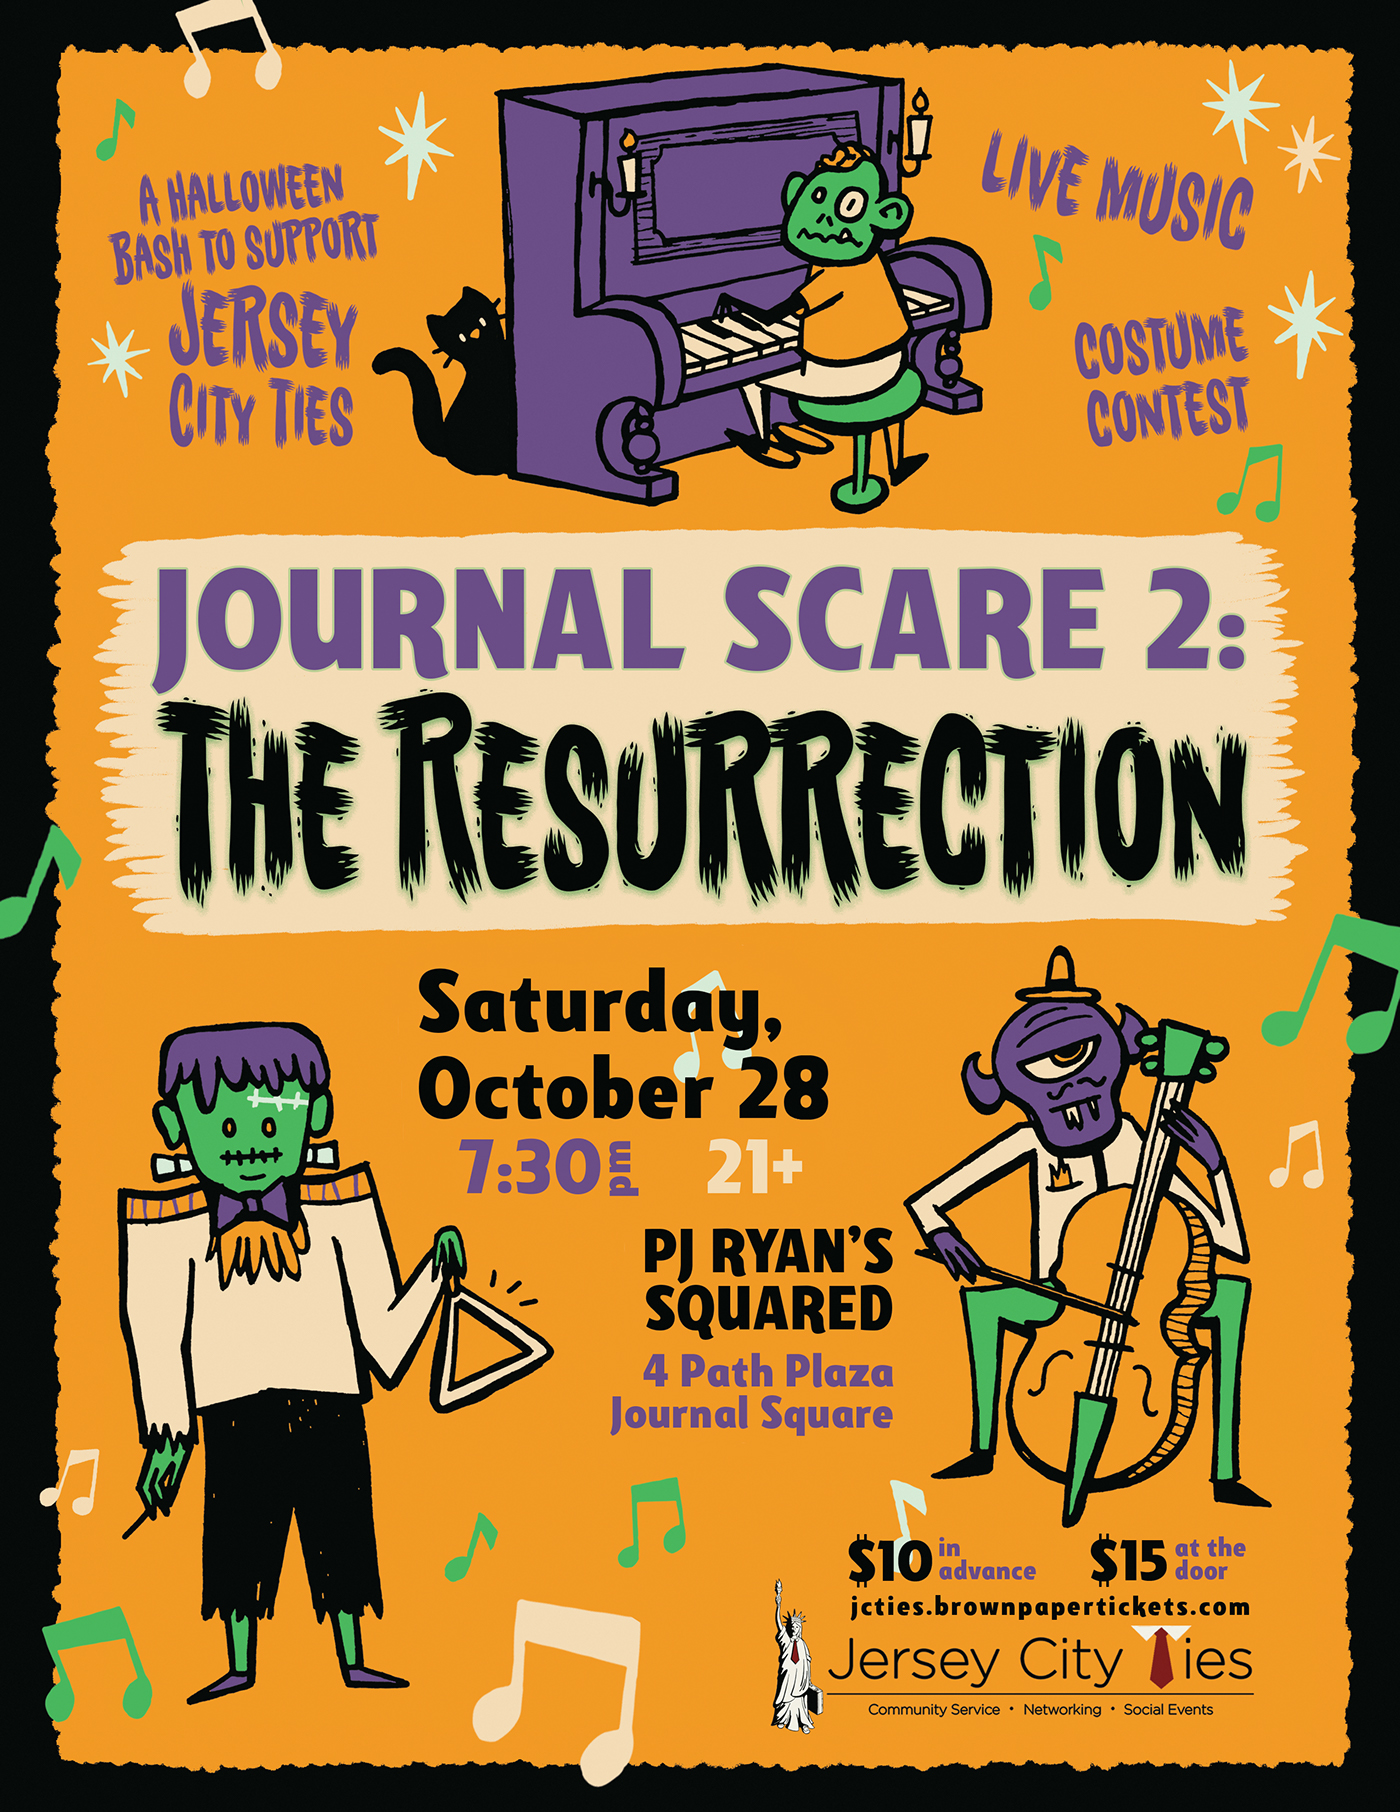 poster flyer Event Design Halloween Jersey City Ties client work